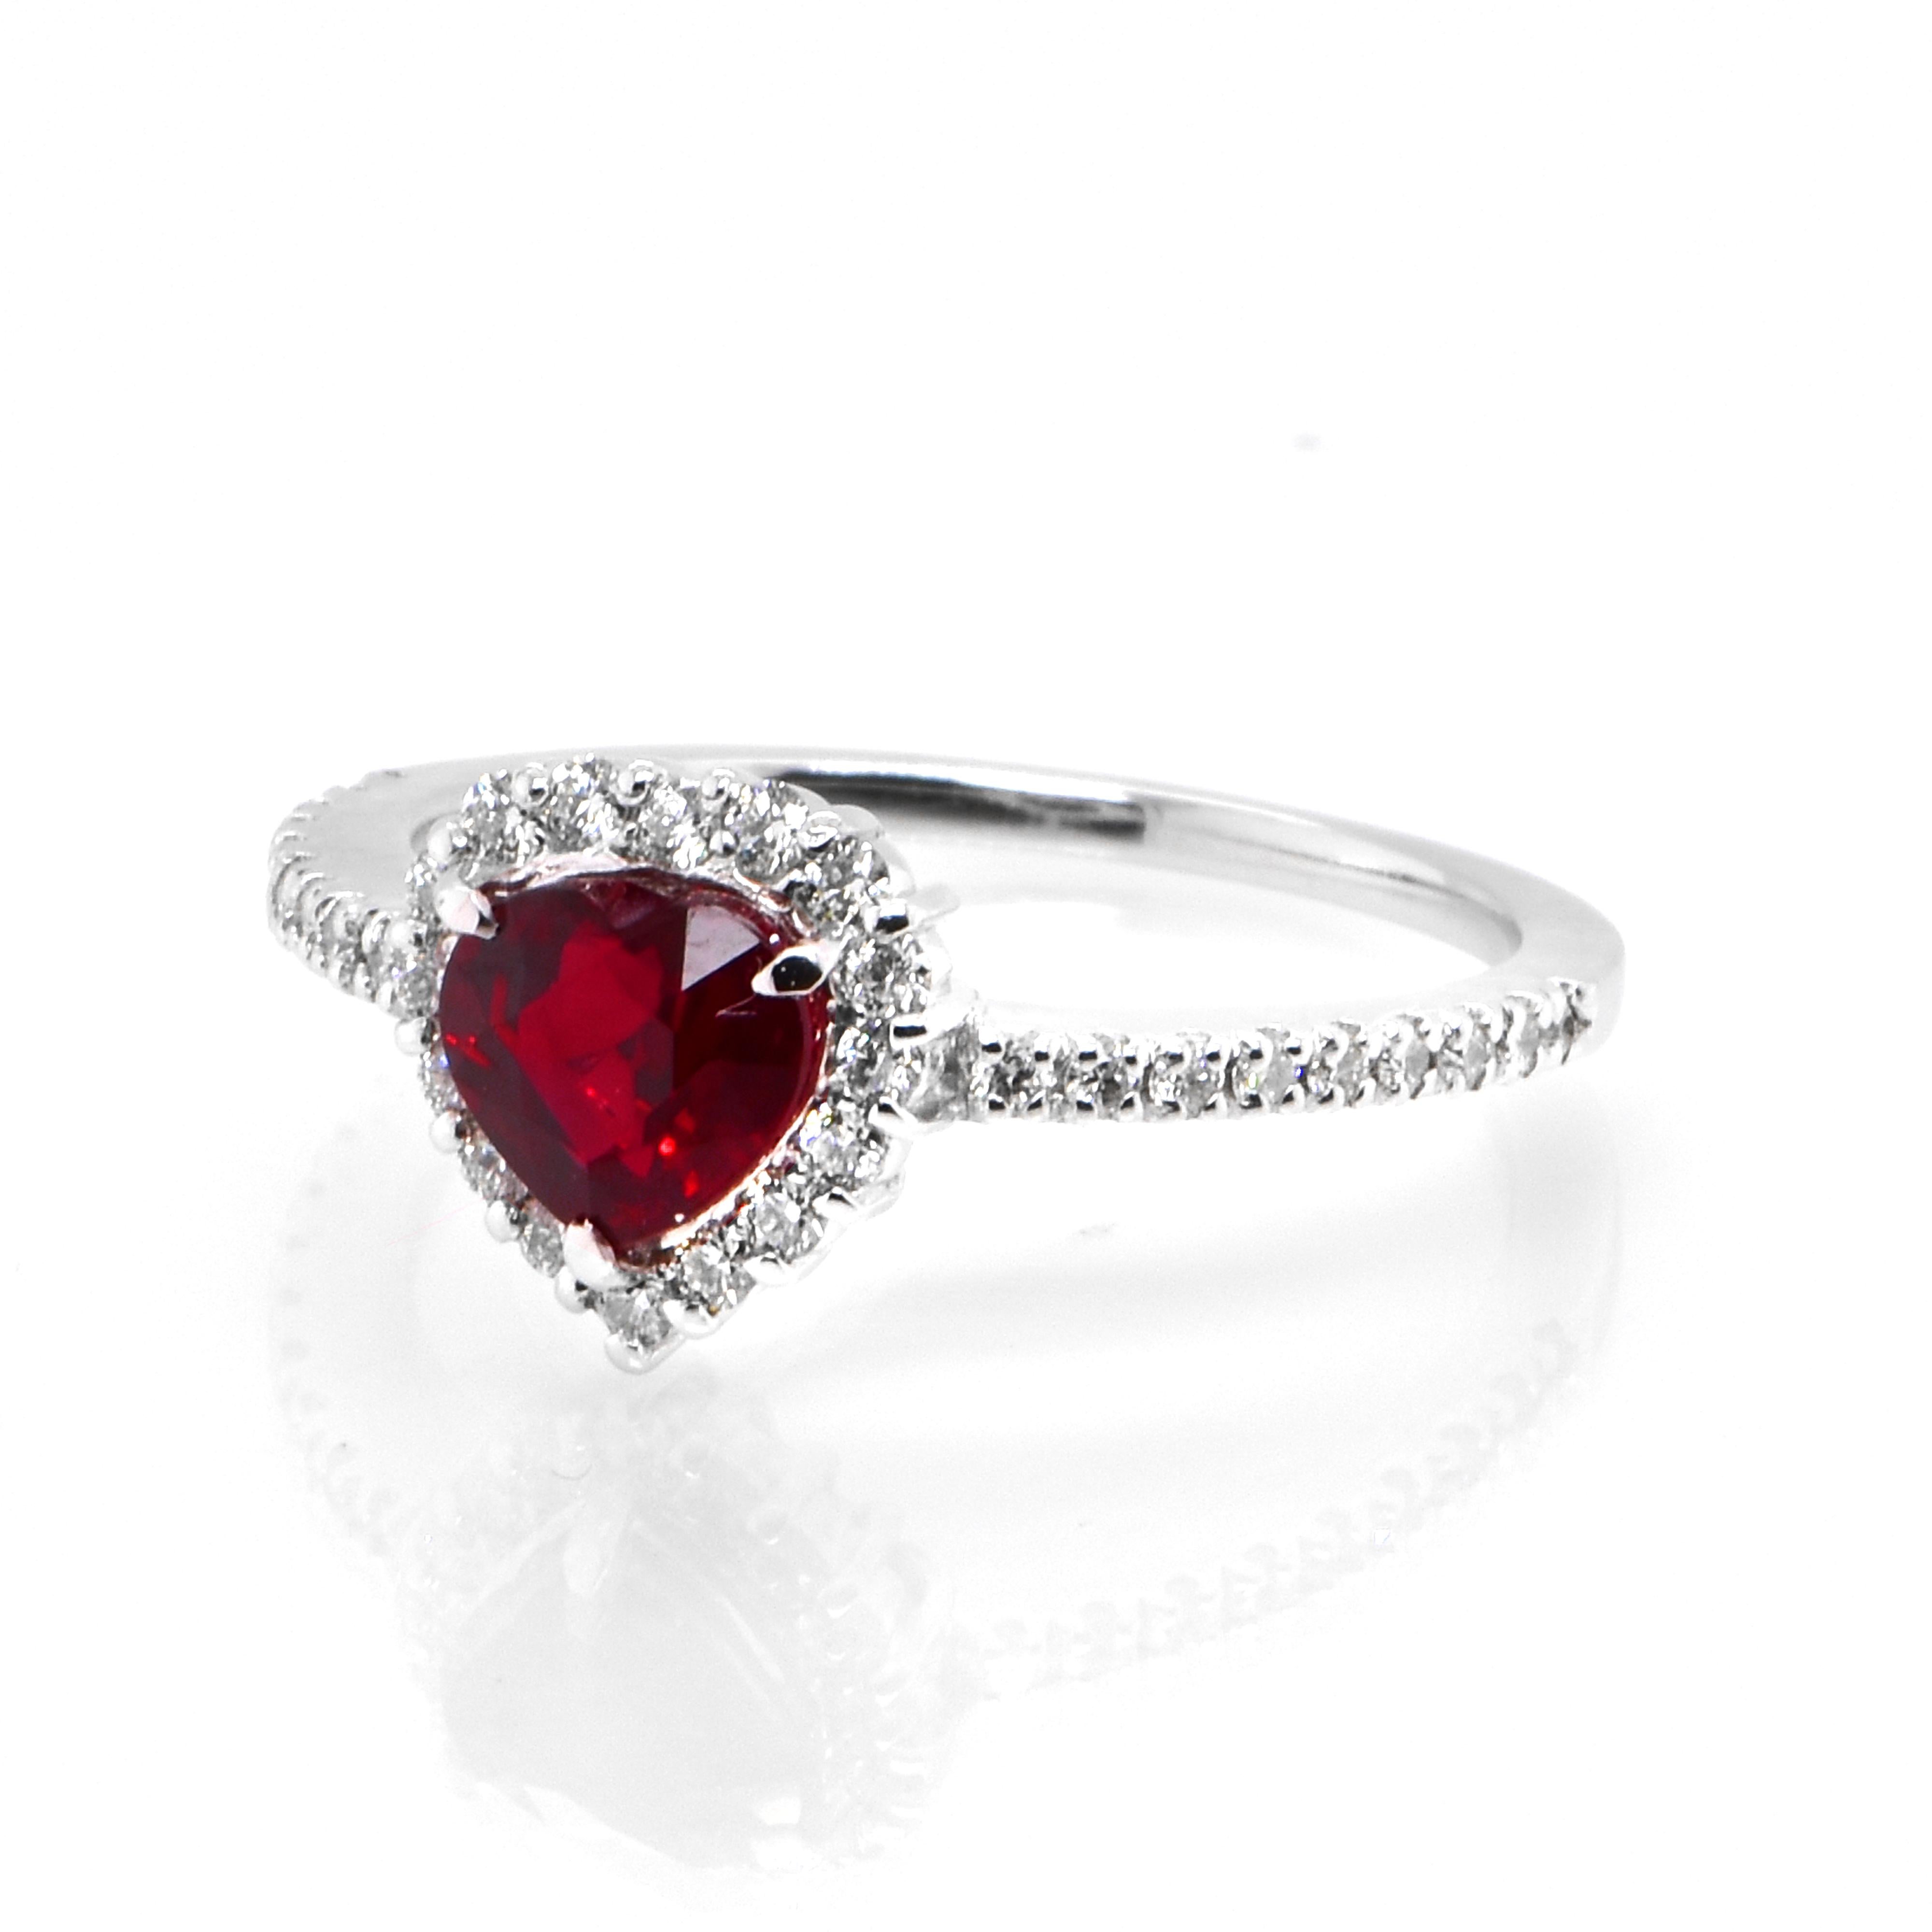 Ein wunderschöner Ring aus Platin mit einem GIA-zertifizierten, natürlichen, taubenblutroten, burmesischen Rubin von 1,01 Karat und Diamanten von 0,27 Karat. Rubine werden im Sanskrit als 